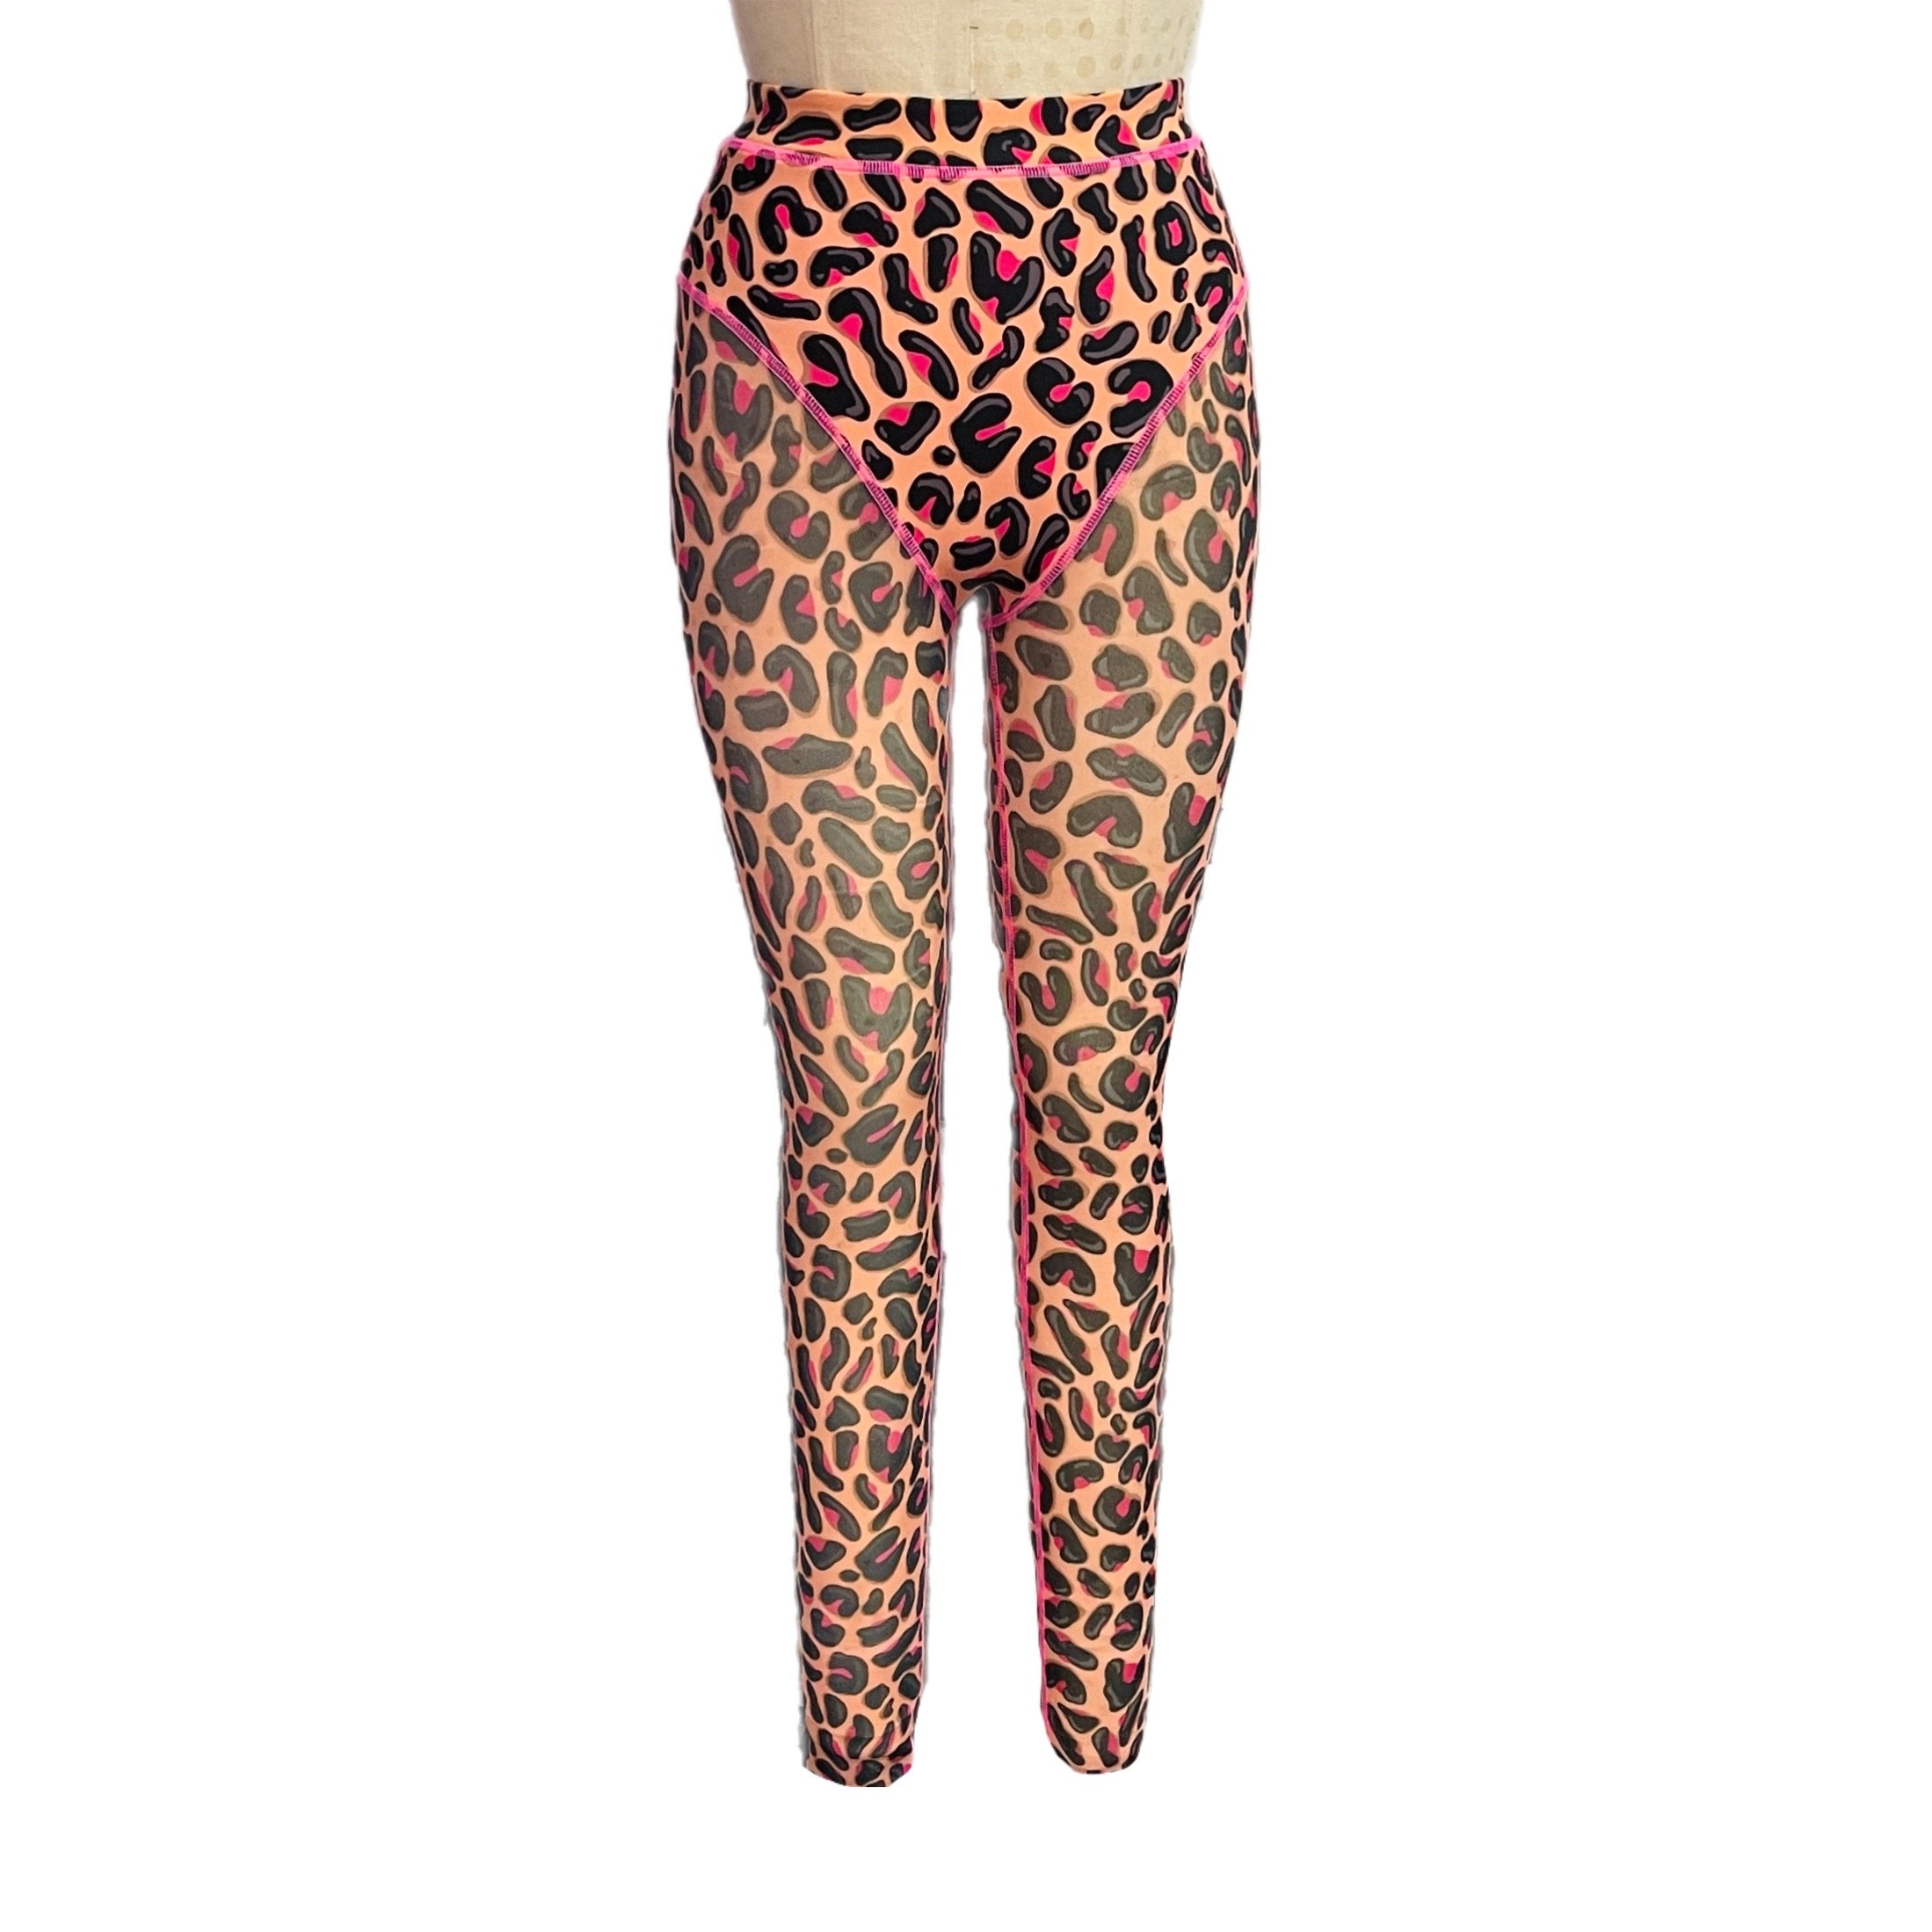 Pink Leopard Leggings for Women, Yoga Leggings, High Waisted